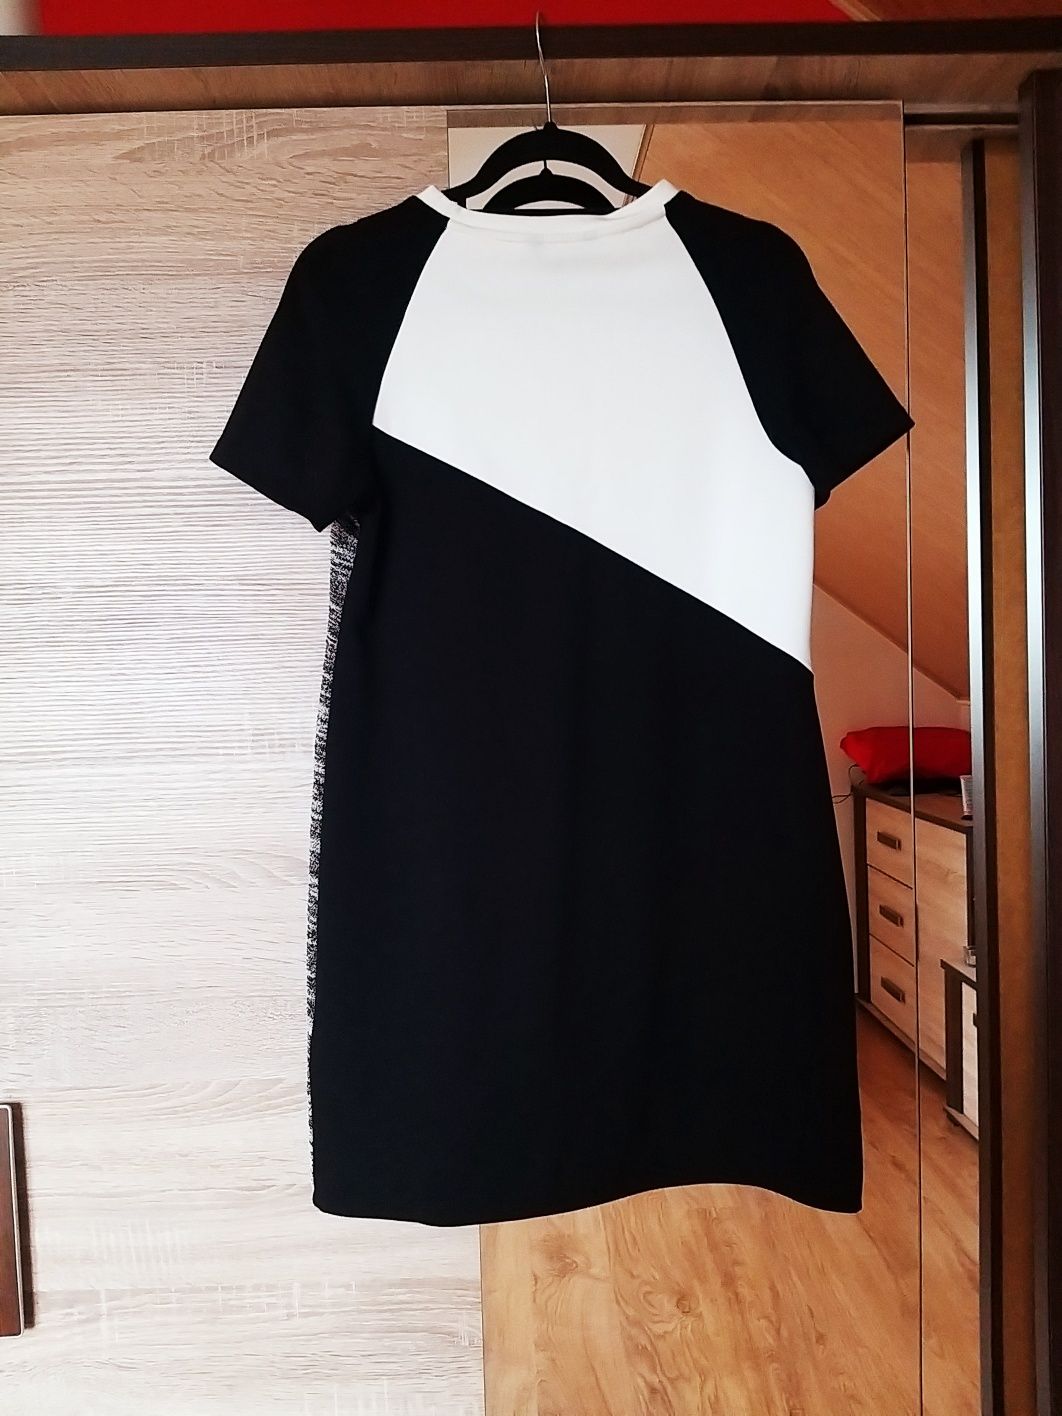 Dresowa krótka sukienka M 38 minimalistyczna czarna biała łączonych